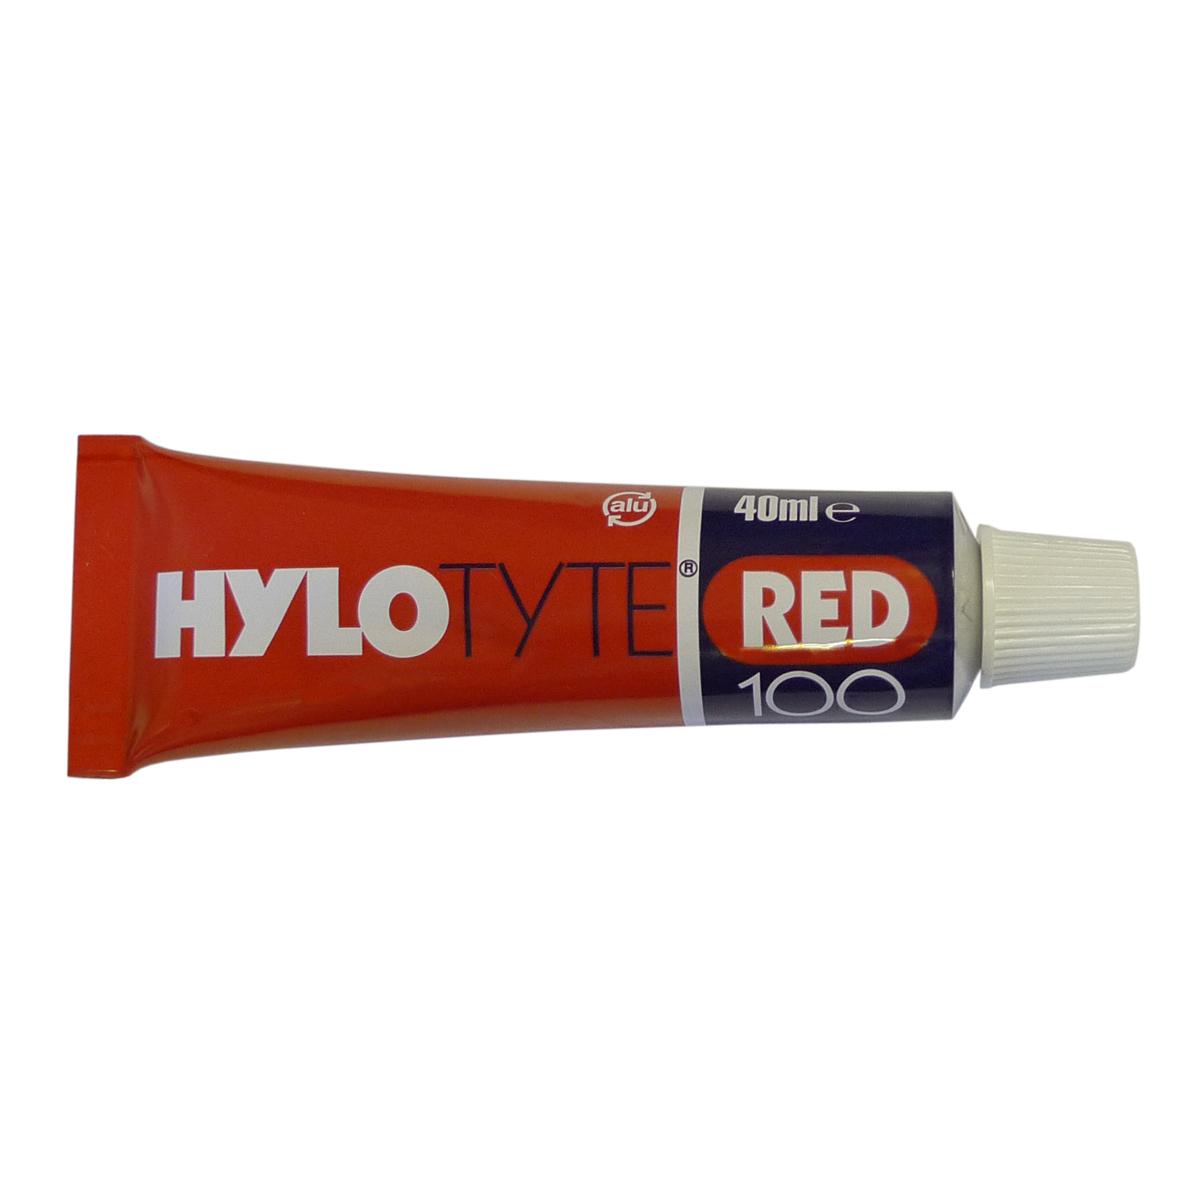 Hylomar Hylotyte rosso 100 Guarnizione Compound